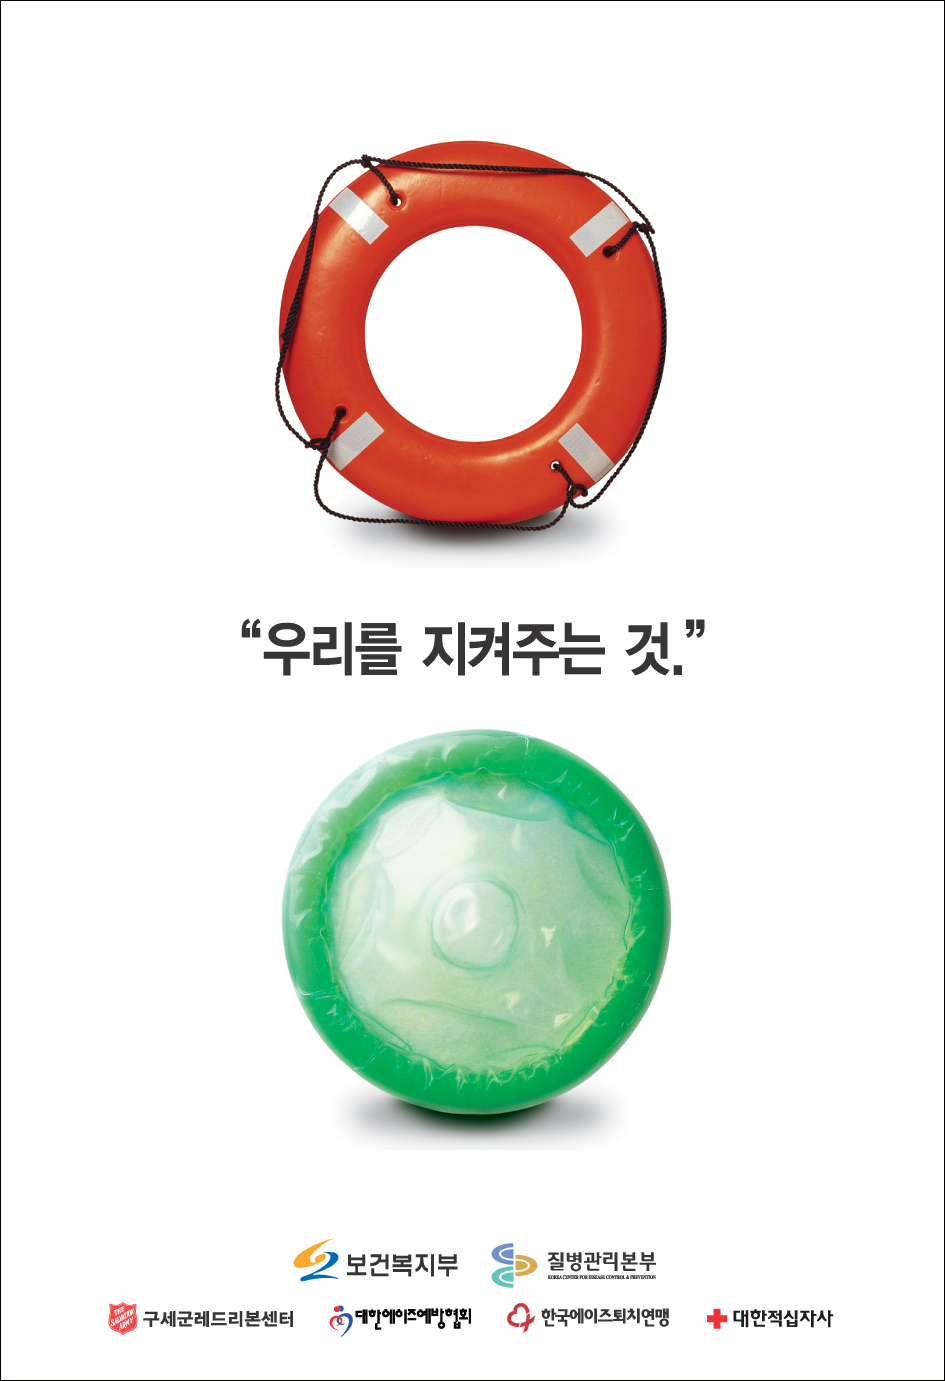 ○ 2005_콘돔사용 포스터(3편)